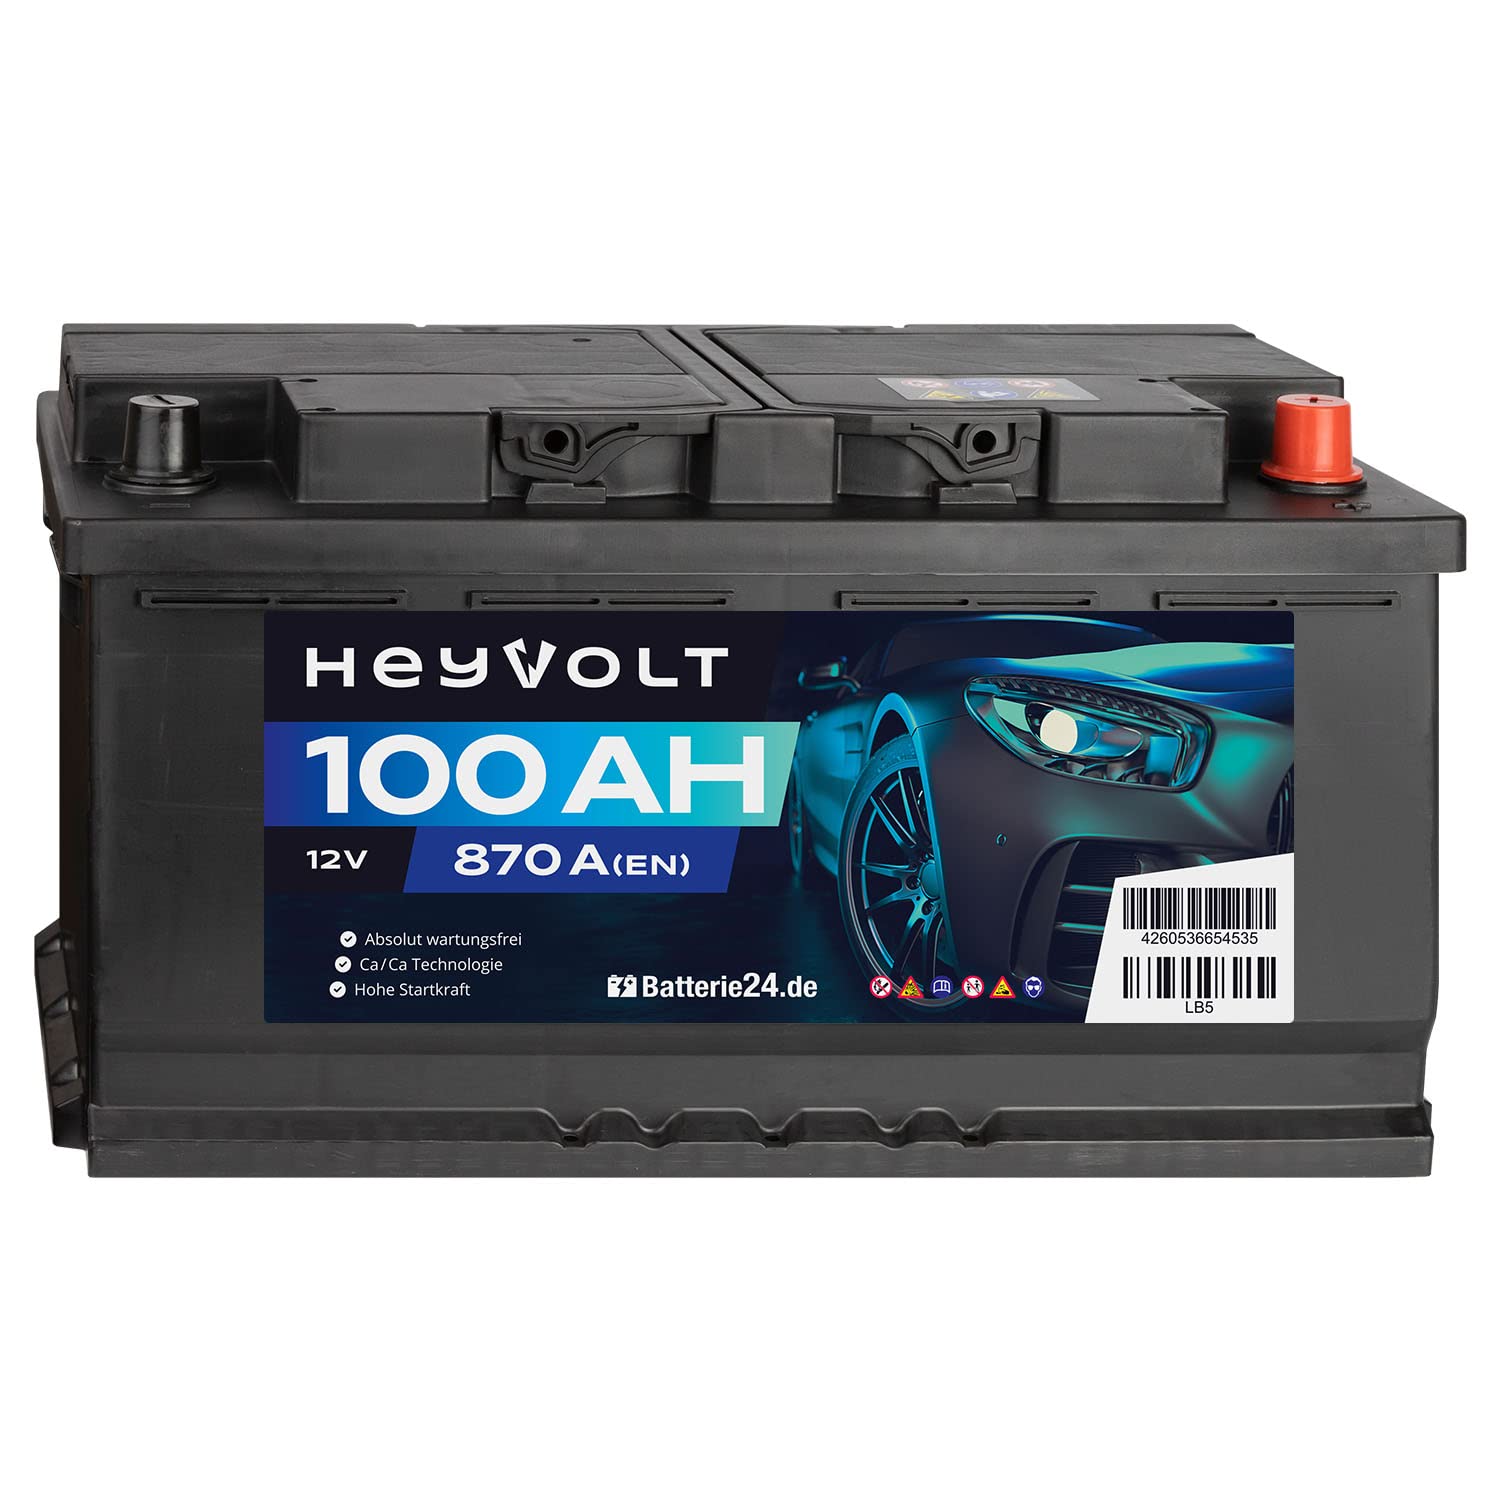 HeyVolt Autobatterie 12V 100Ah 870A/EN Starterbatterie, absolut wartungsfrei ersetzt 85Ah 88Ah 92Ah 95Ah von Batterie24.de